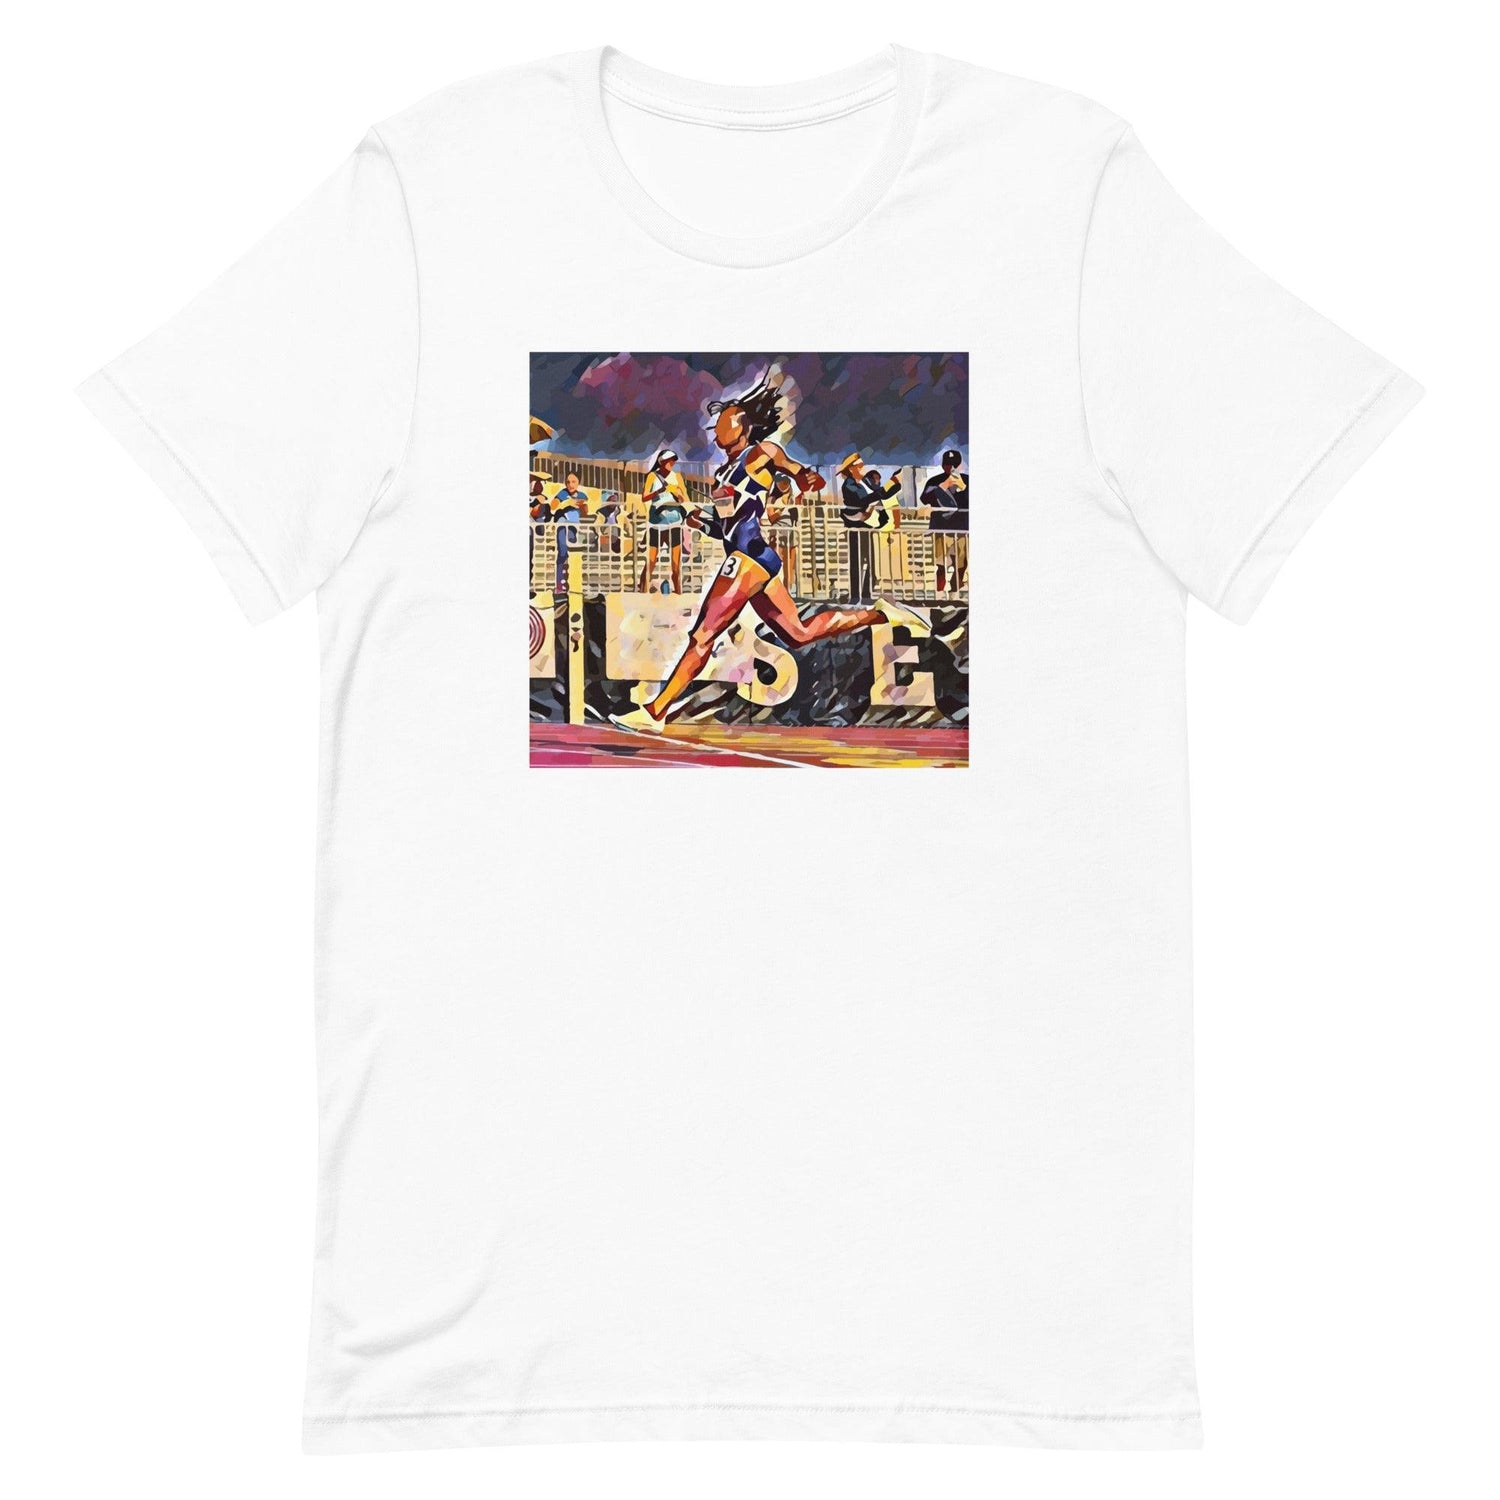 Kyra Jefferson "Essence" t-shirt - Fan Arch